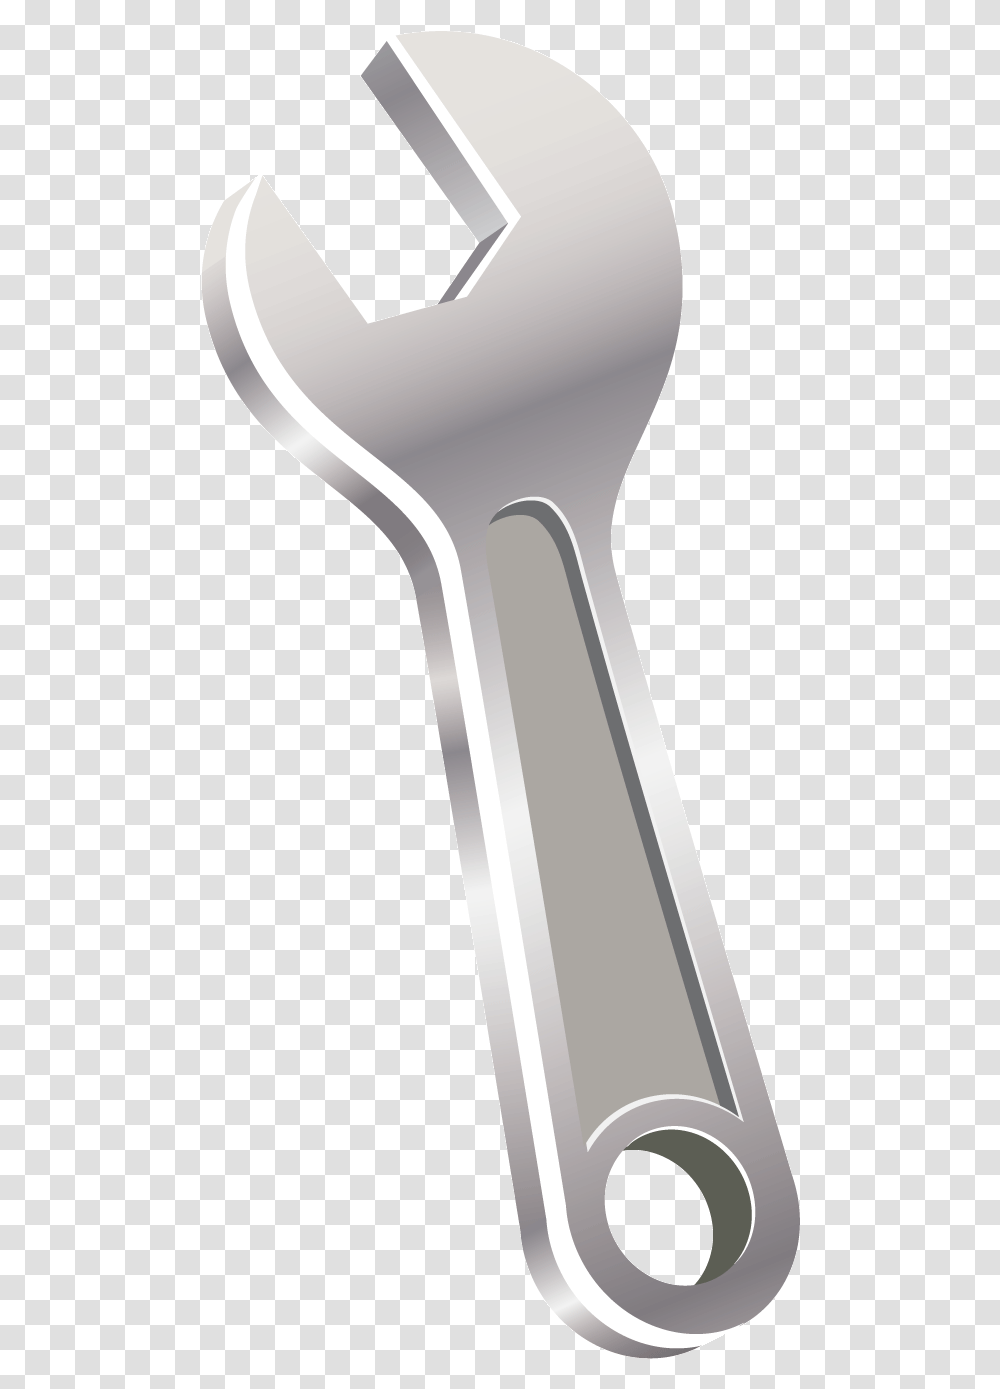 Wrench Tool Adjustable Spanner Nutcracker, Hammer Transparent Png